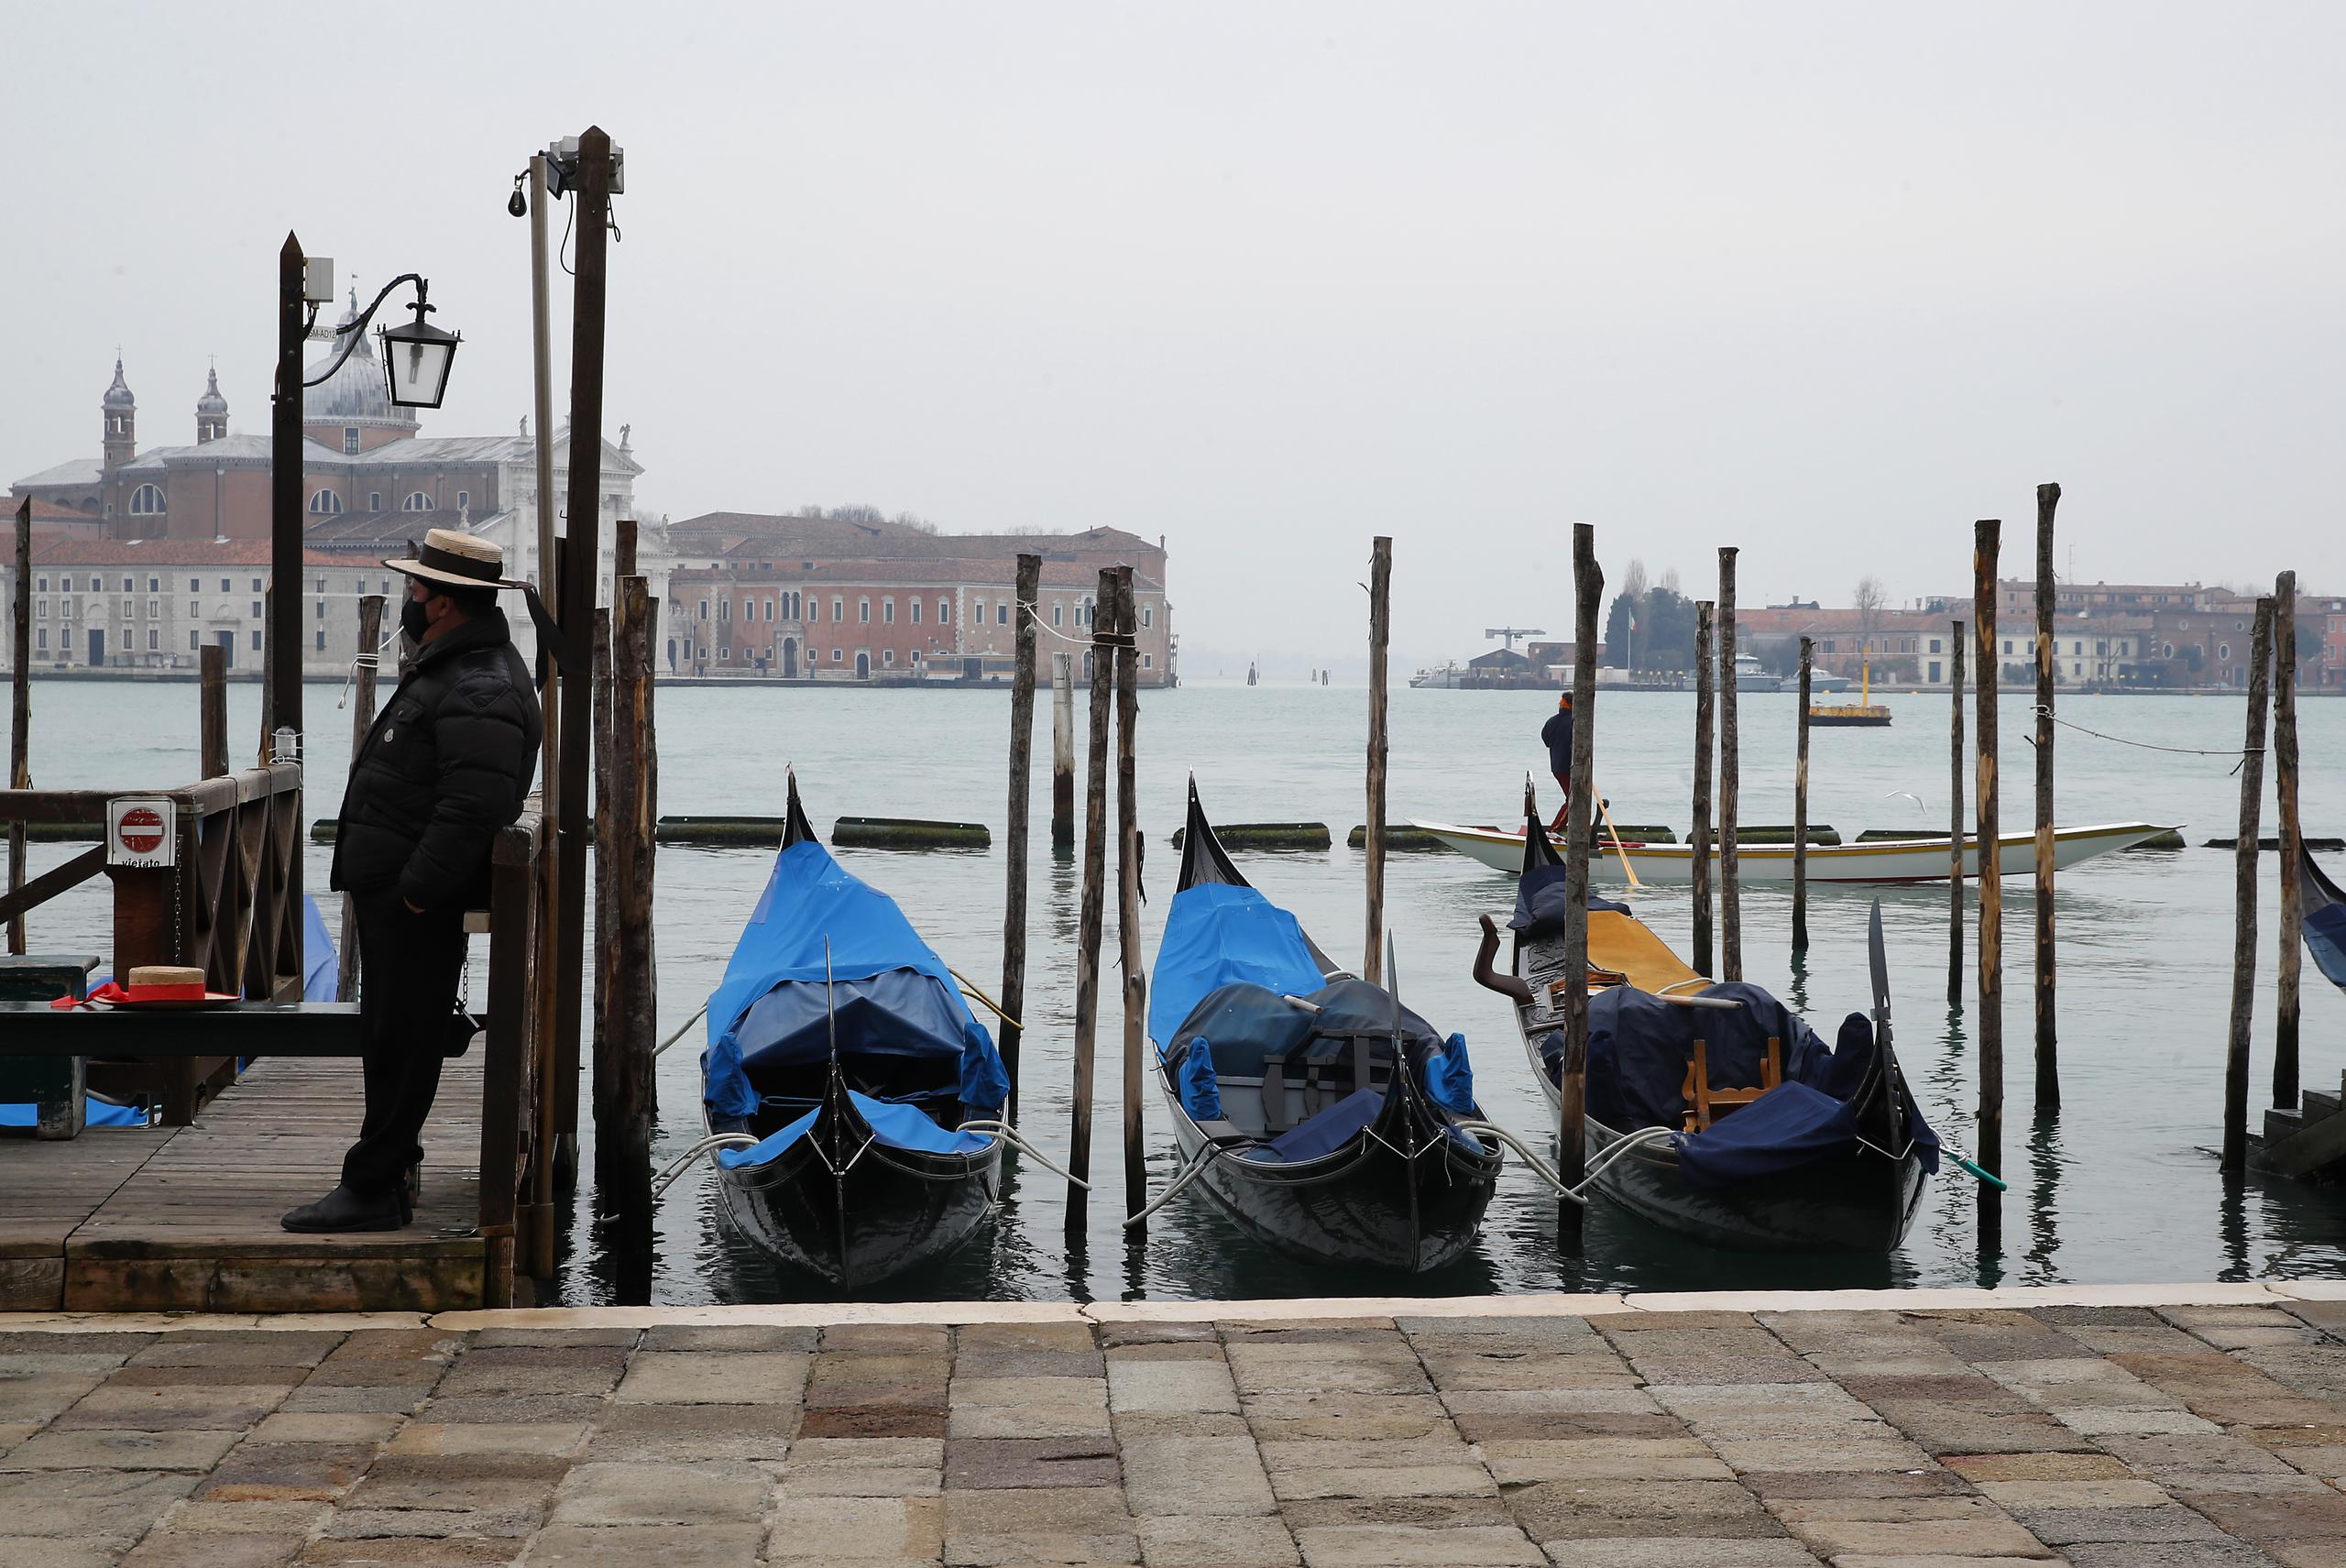 Si este fuera un año normal, Venecia estaría hoy repleta de vecinos y turistas disfrutando de su famoso Carnaval.